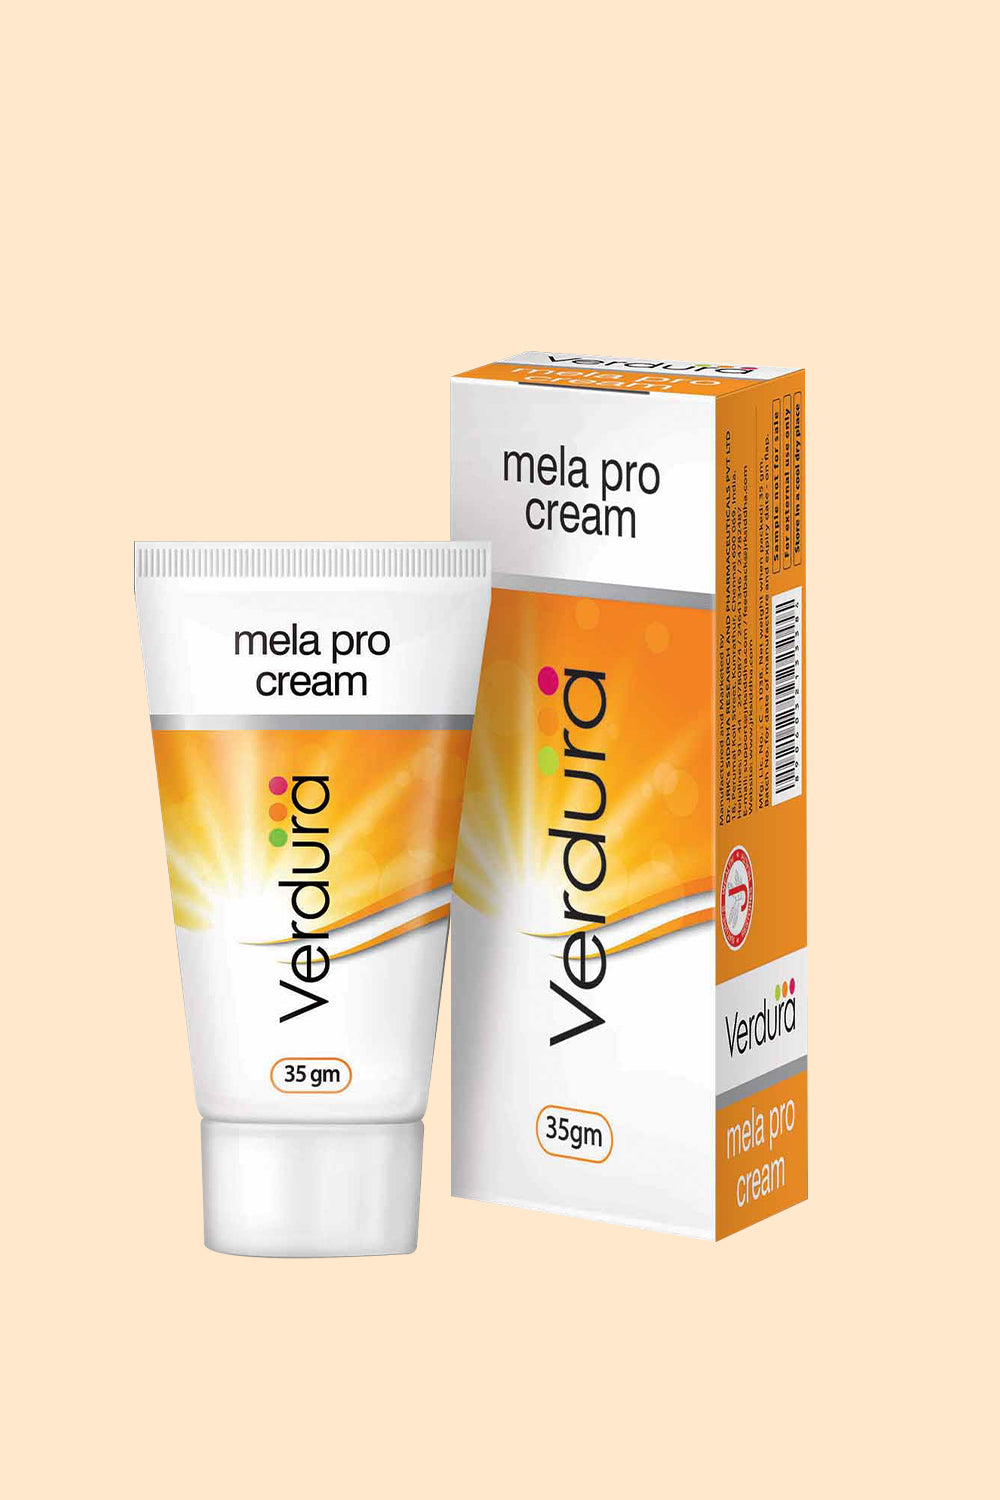 Dr. JRK's Verdura Mela Pro Cream